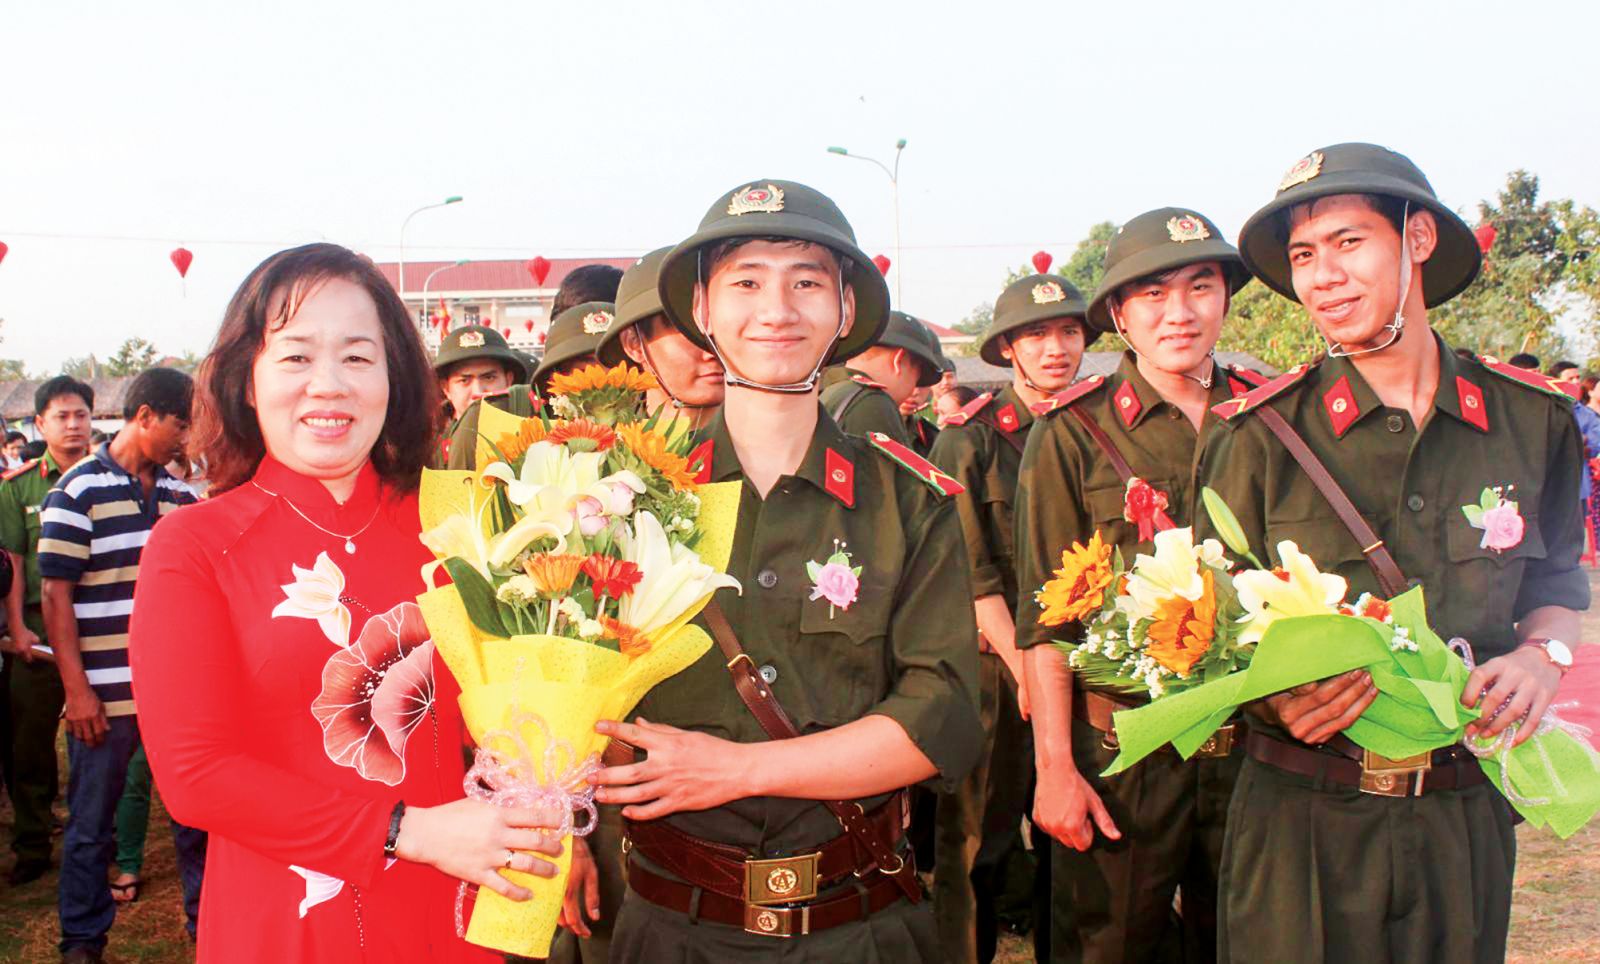 Đồng chí Phan Thị Hồng Nhung, Ủy viên Ban Thường vụ Thành ủy, Chủ tịch UBMTTQVN TP Cần Thơ tặng hoa cho tân binh quận Bình Thủy. Ảnh: Q.LAM